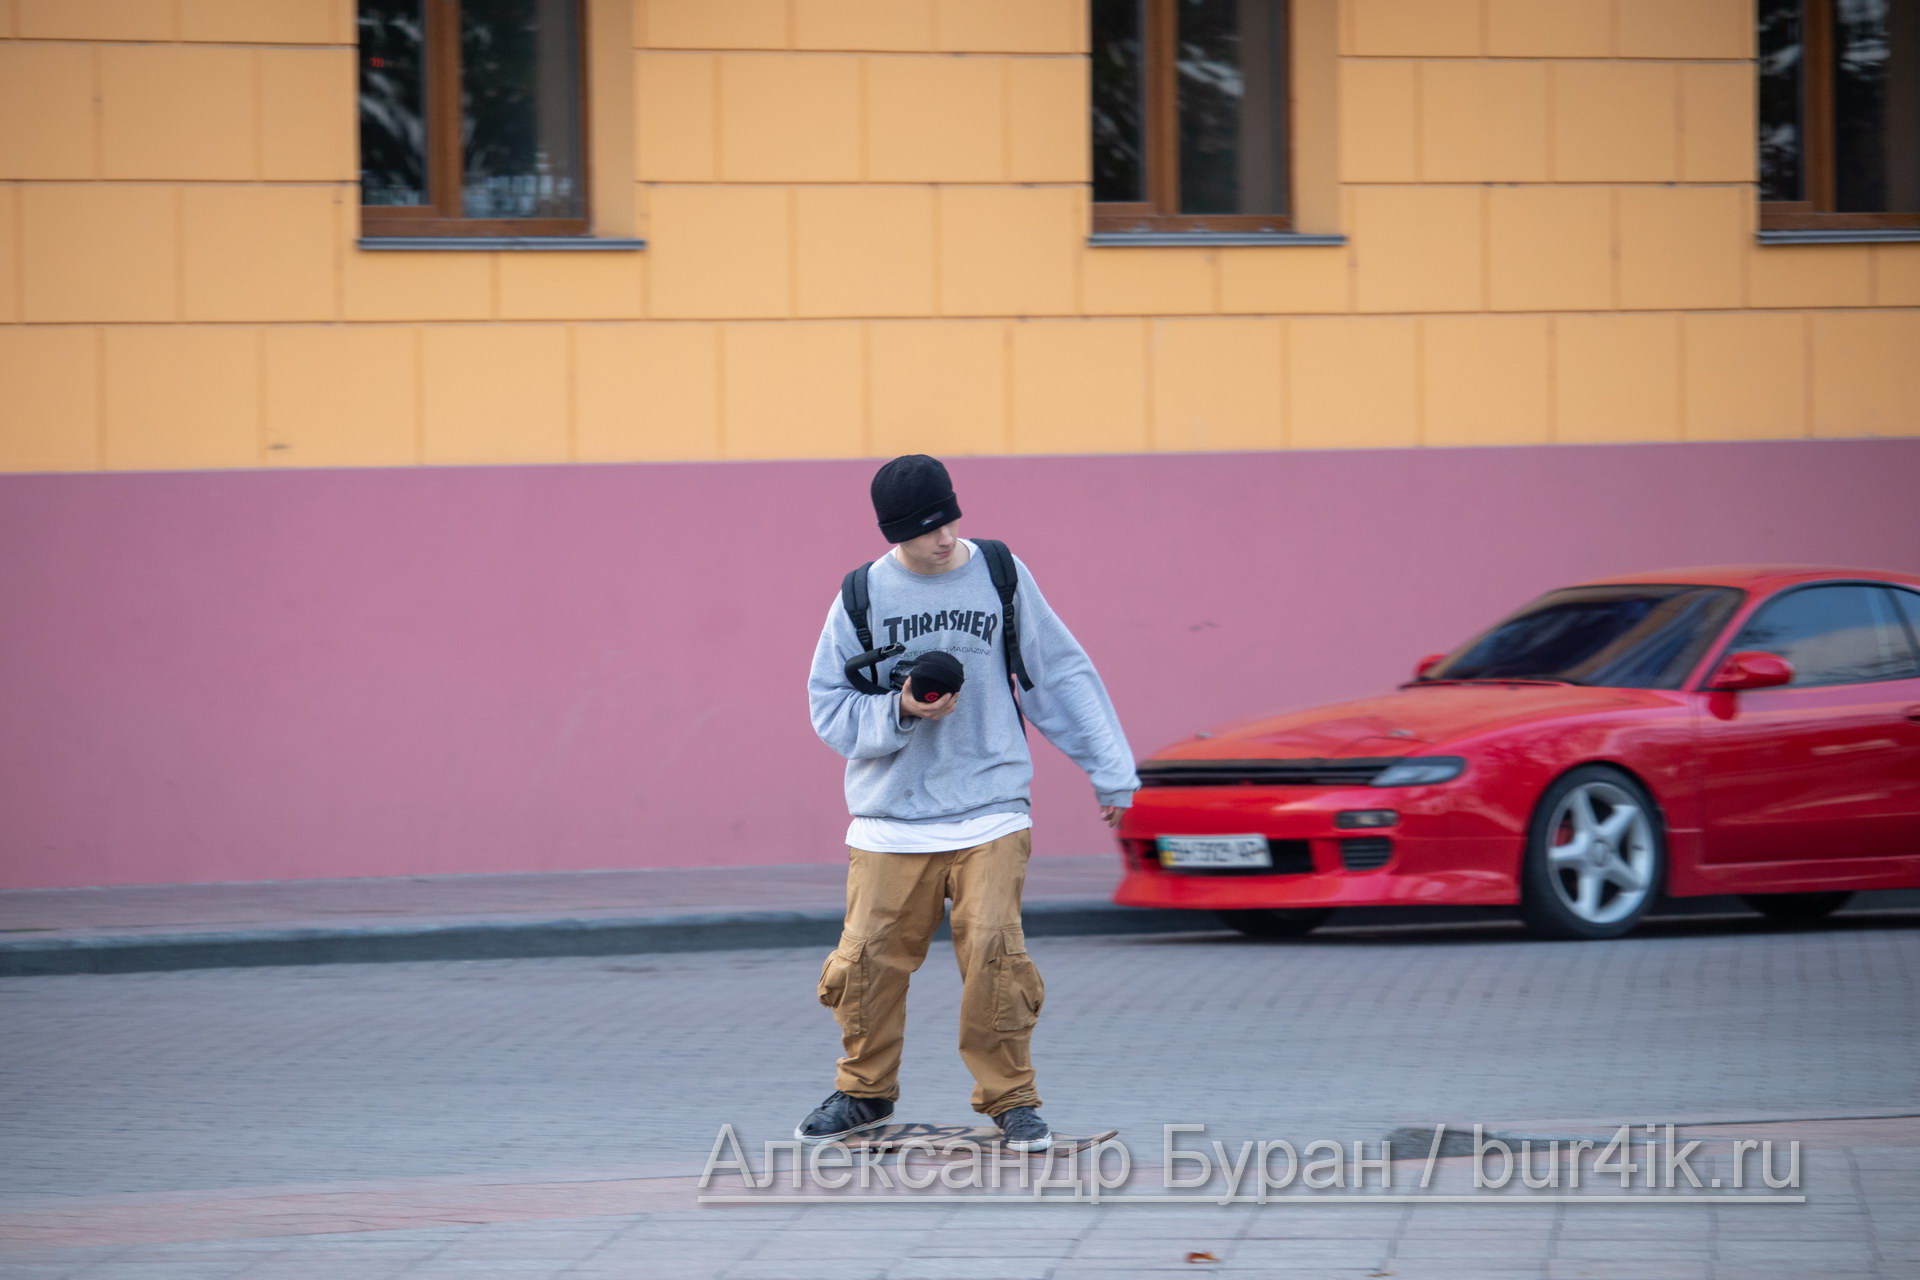 Парень подросток с телефоном в руках на скейте - Украина, Одесса, 09,11,2019